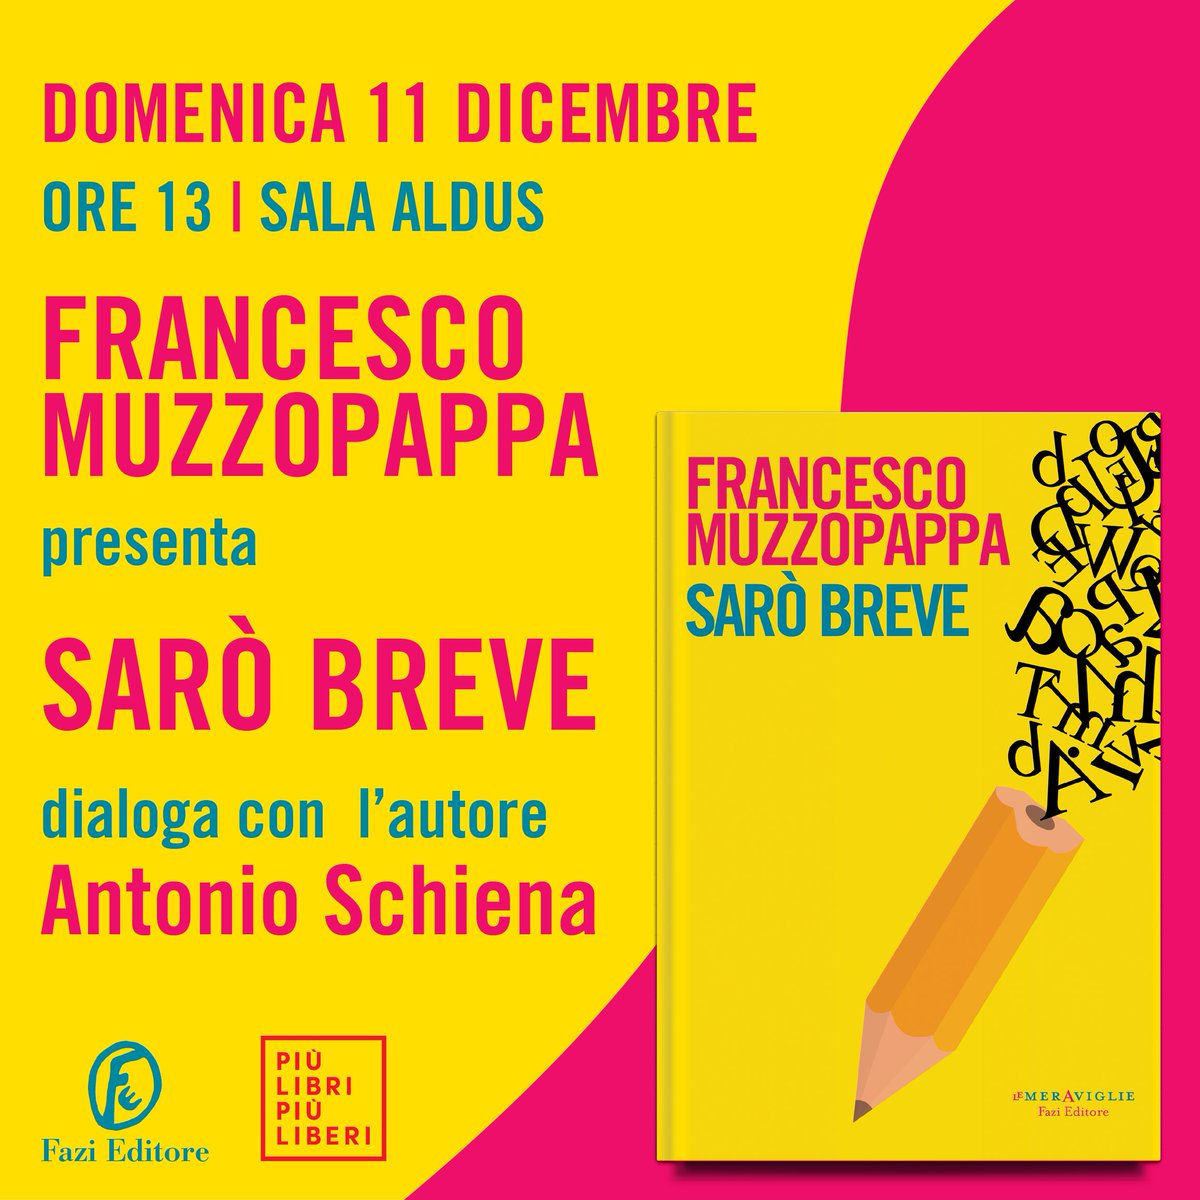 Domenica prossima @Muzzopappa sarà a Roma per presentare il suo ultimo romanzo «Sarò breve» a @piulibri22 in compagnia di Antonio Schiena. Risate assicurate! #piulibri22 fazieditore.it/eventi/fazi-ed…